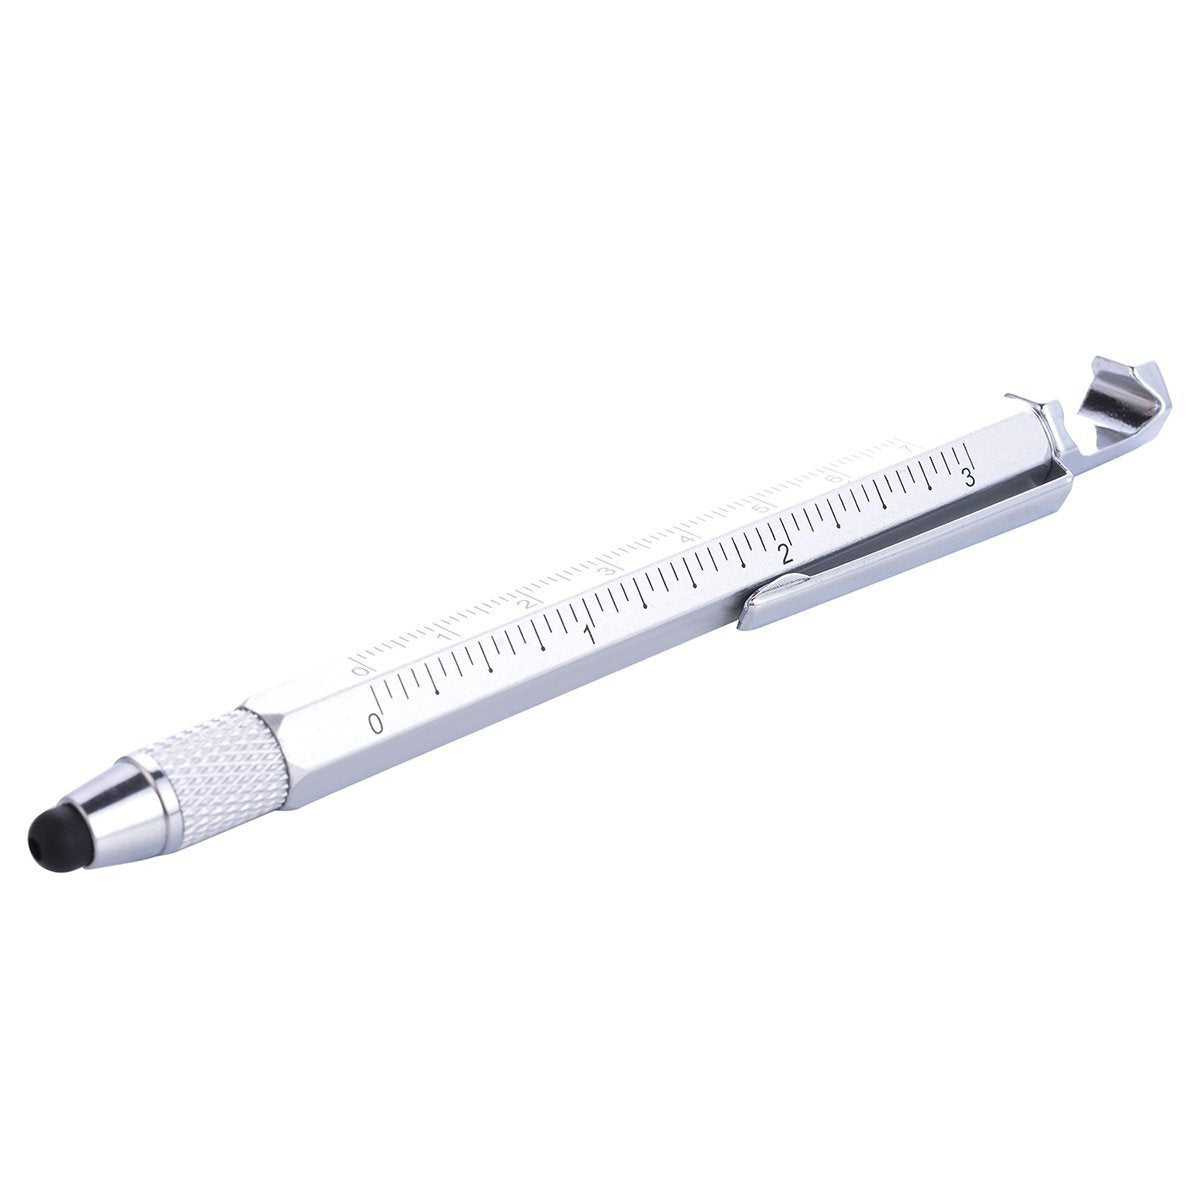 Friken Cool Pen: 5-in1 Ruler Tech Pen